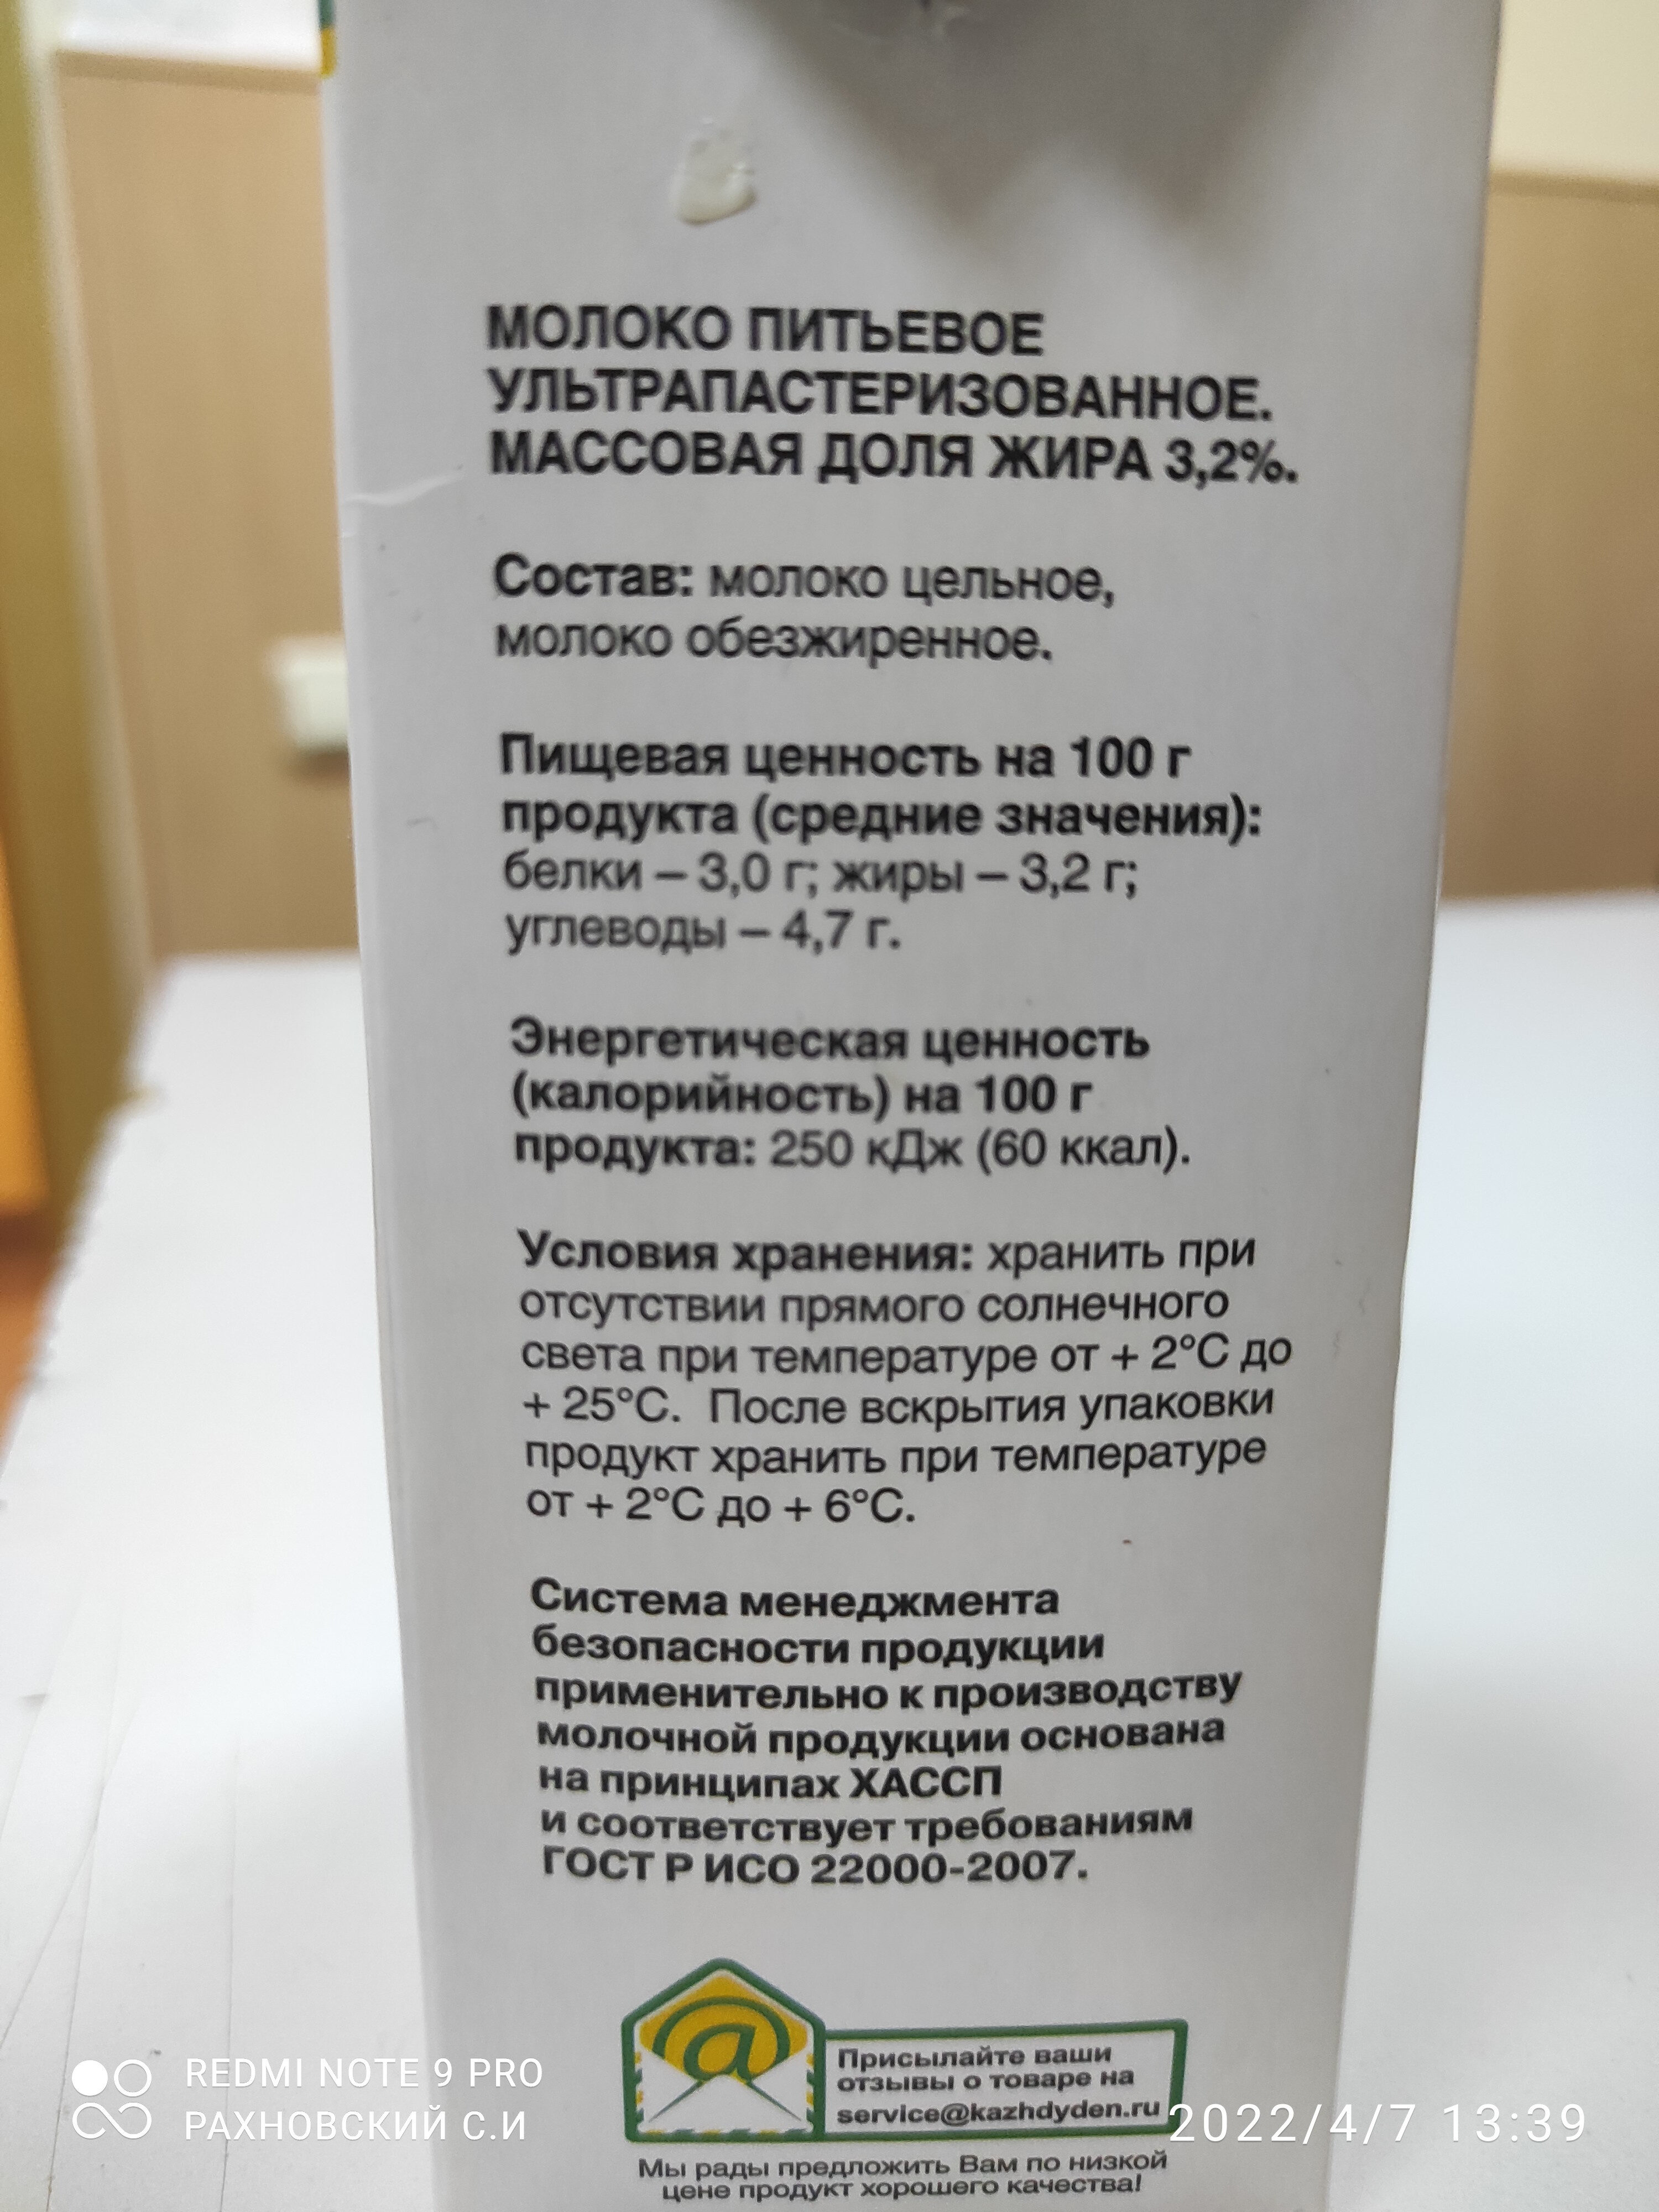 Молоко ультрапасиеризованное 3,2% - Ingredienser - ru